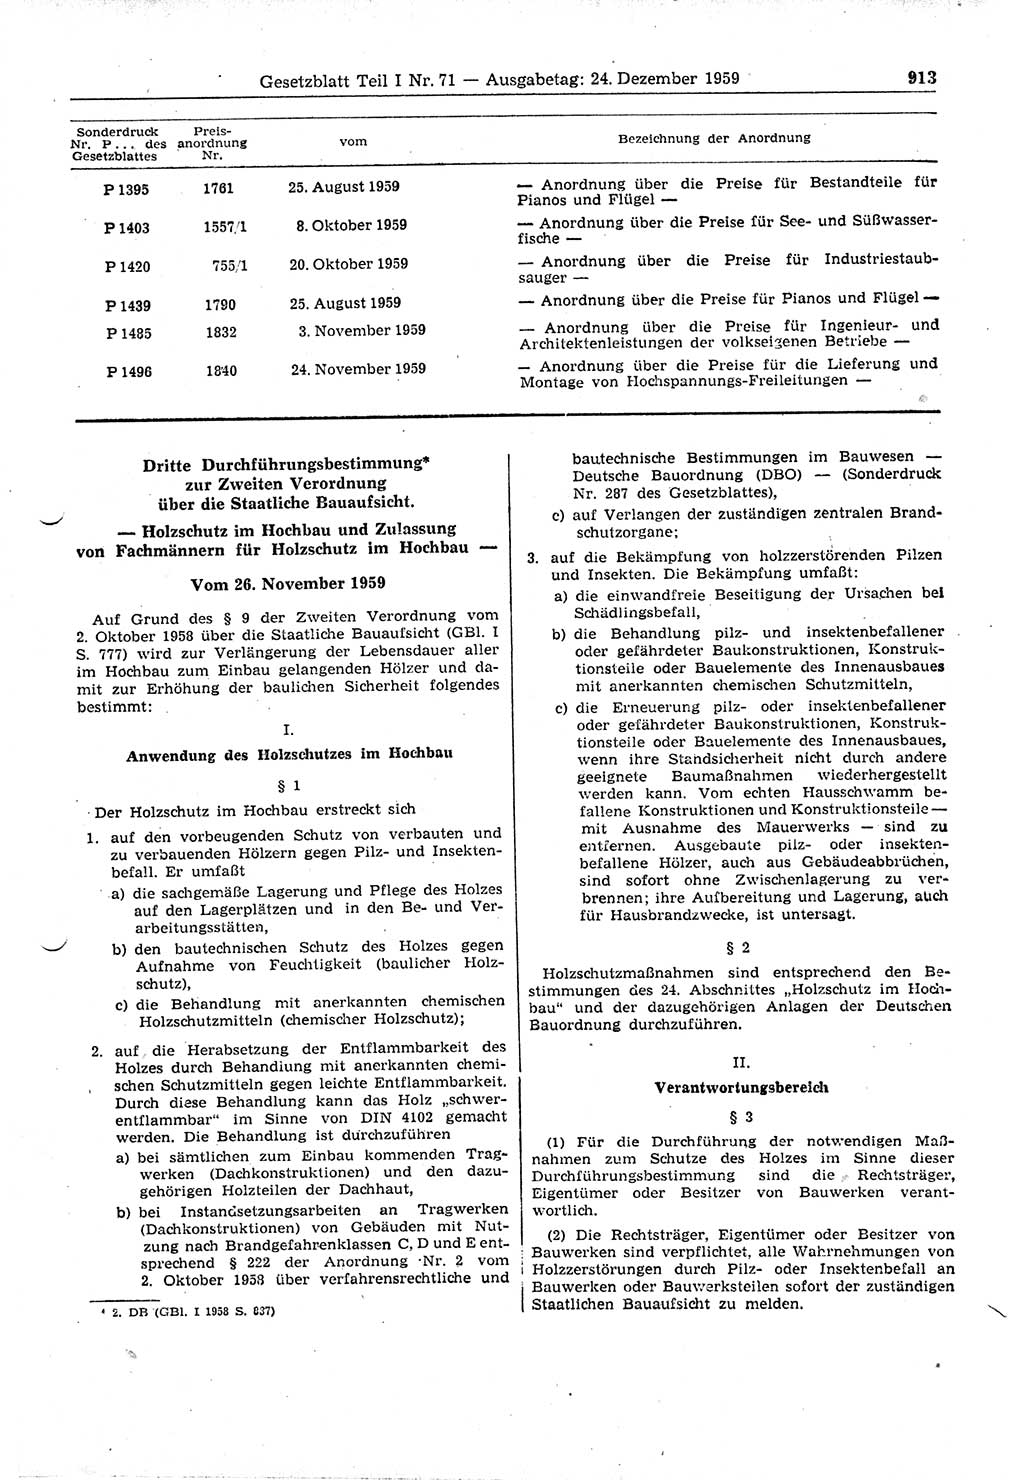 Gesetzblatt (GBl.) der Deutschen Demokratischen Republik (DDR) Teil Ⅰ 1959, Seite 913 (GBl. DDR Ⅰ 1959, S. 913)